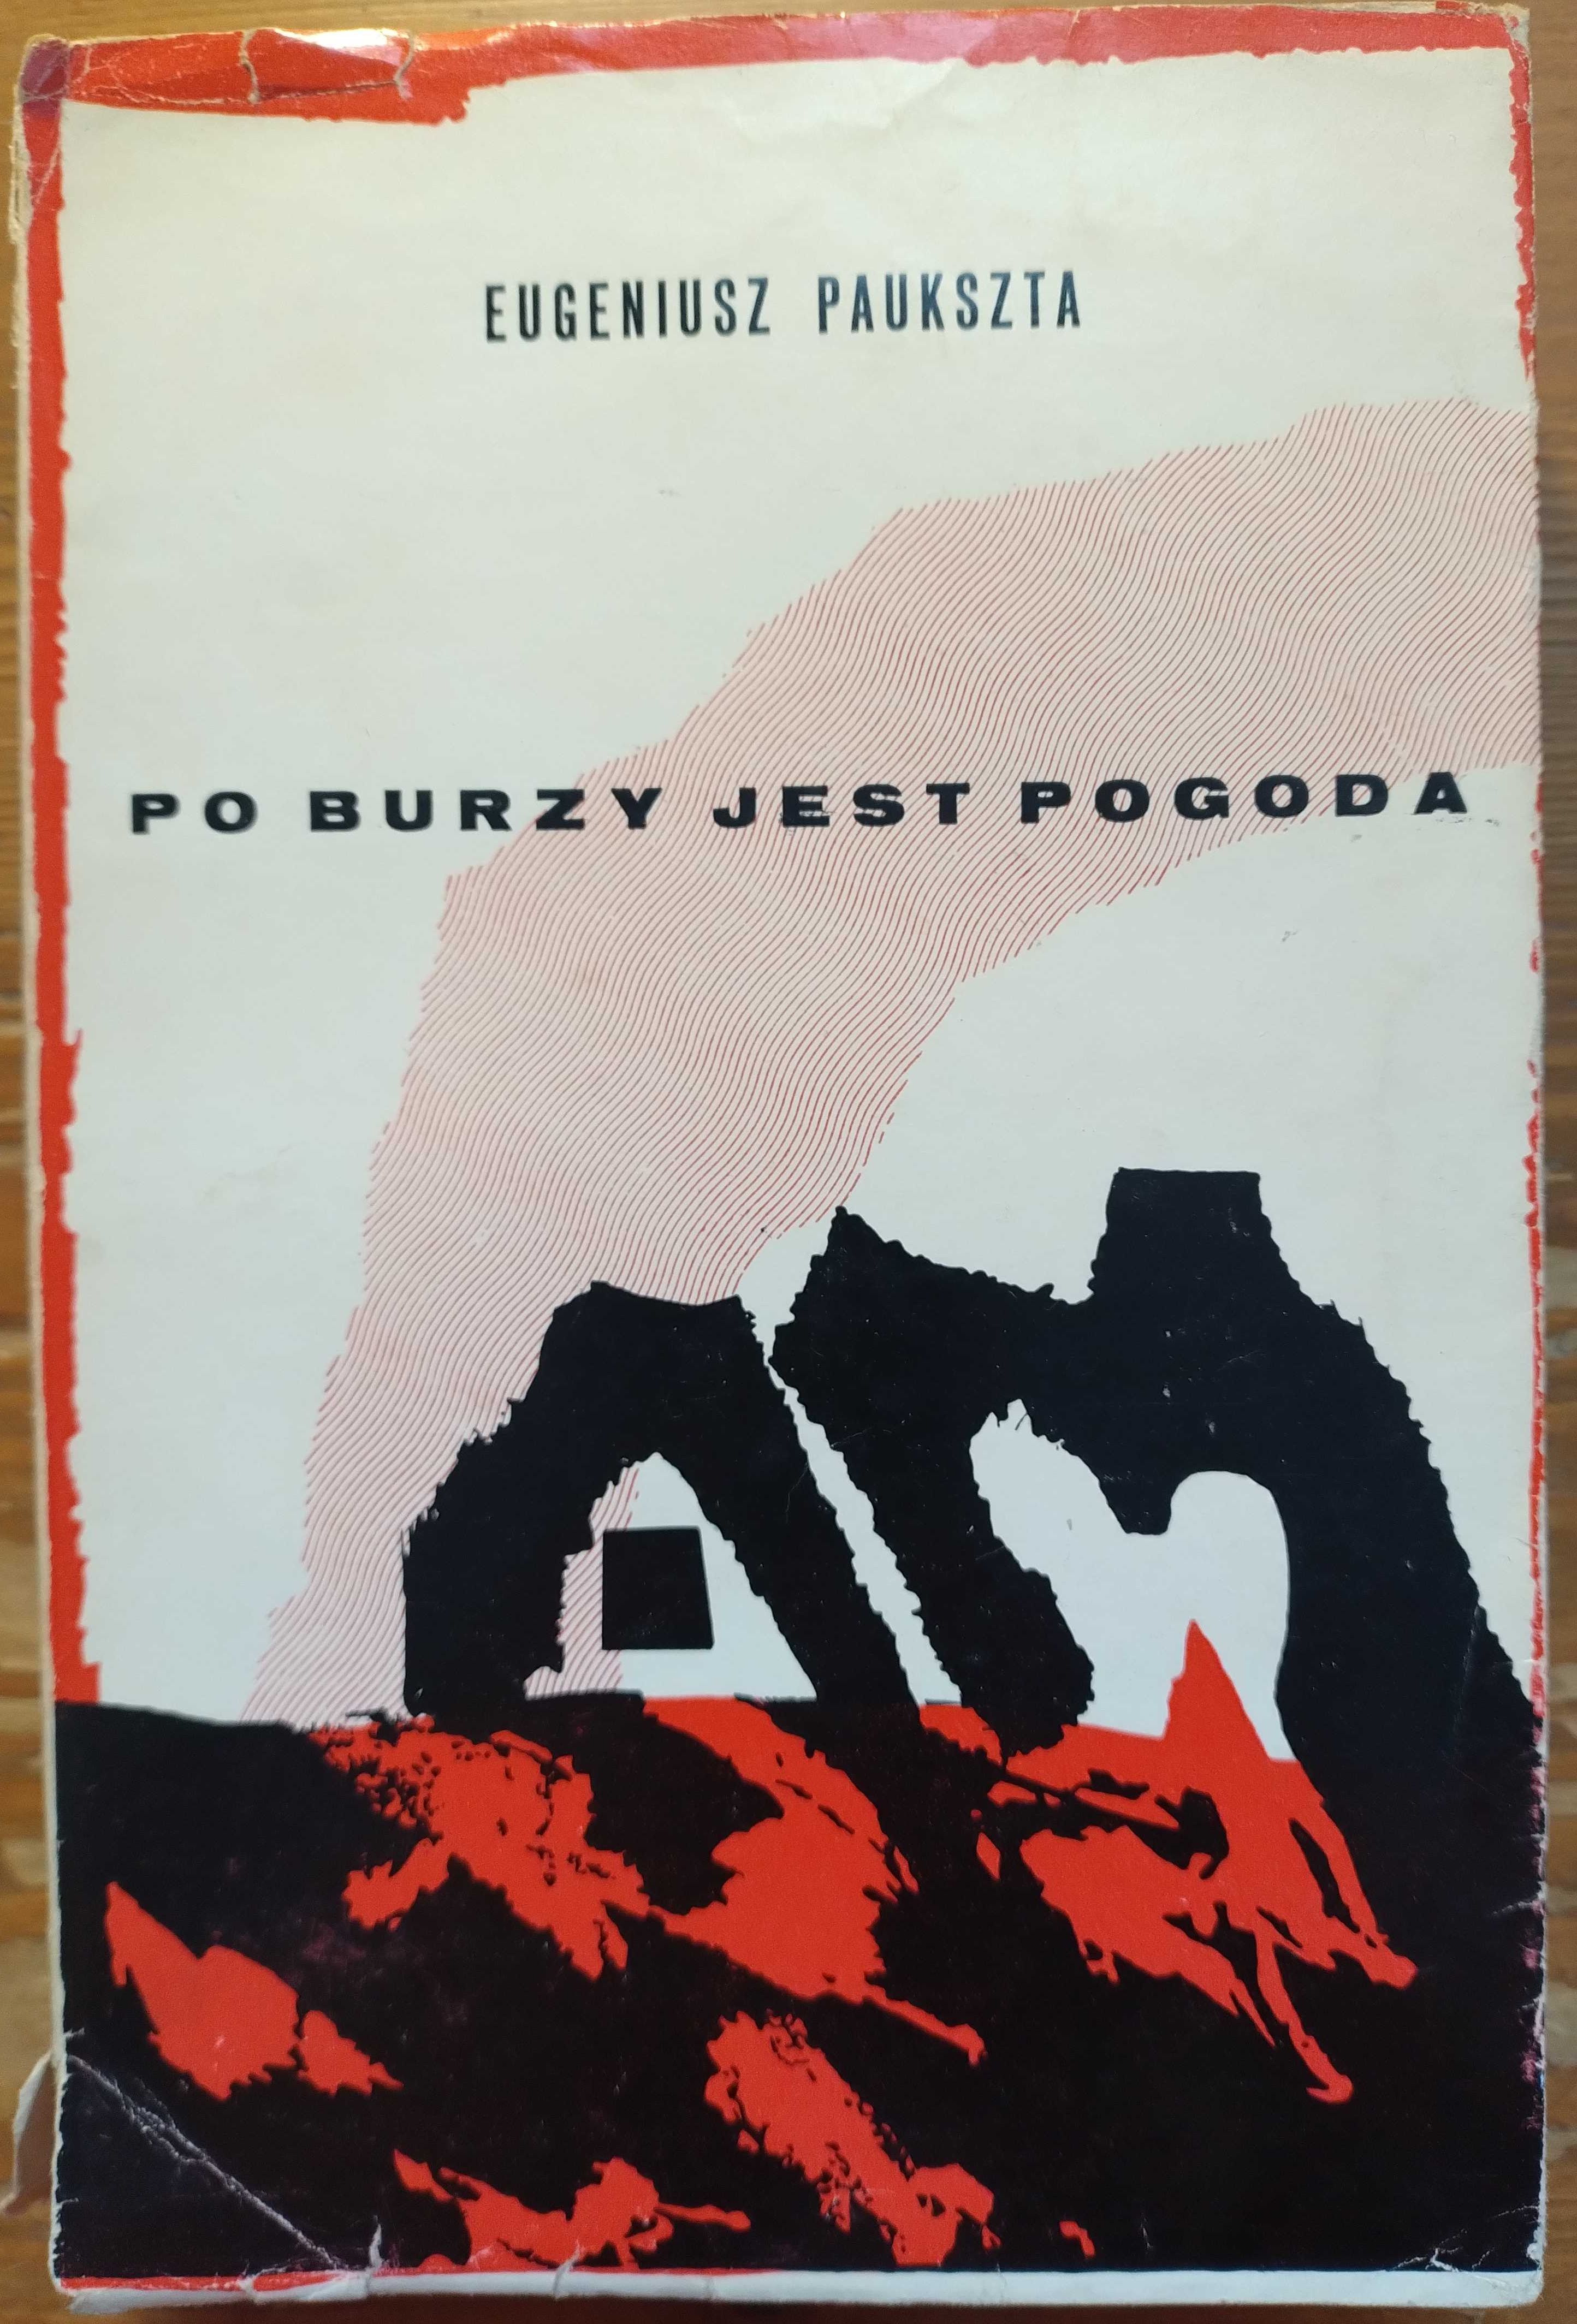 Po burzy jest pogoda - Eugeniusz Paukszta, 1966, wydanie I